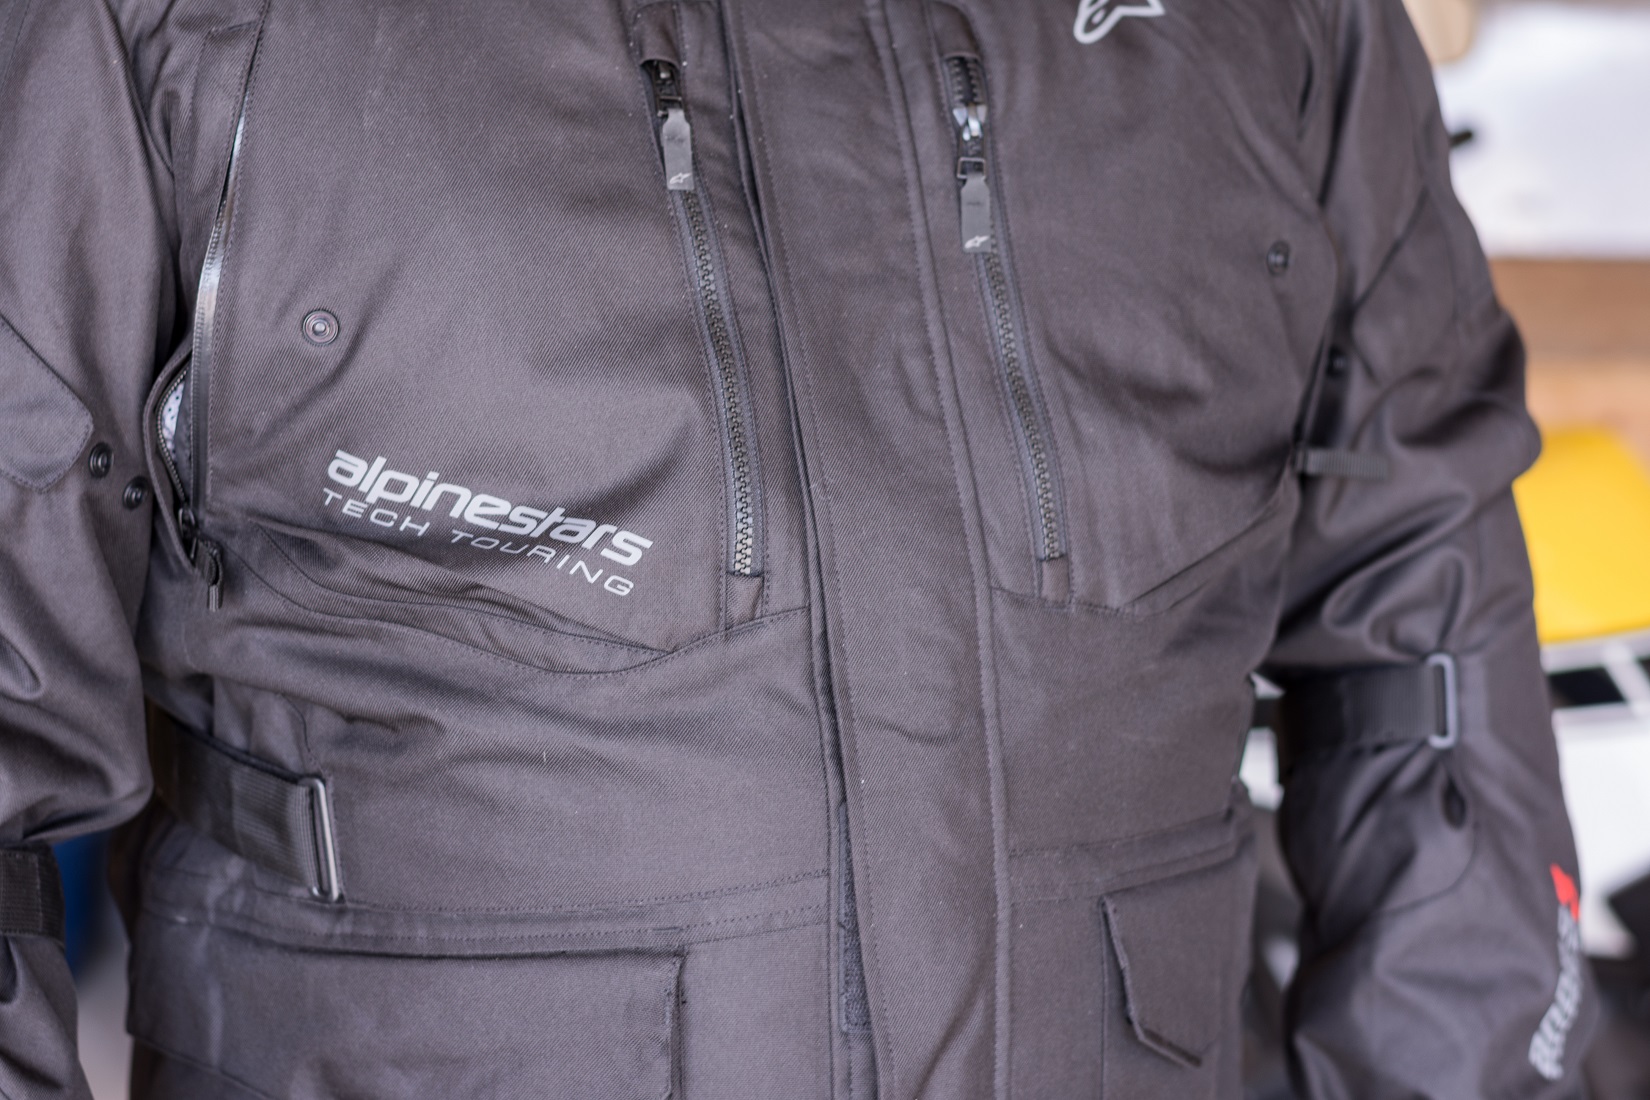 Alpinestars Andes V3 Drystar Adventure Tourer Jacket Hands On 